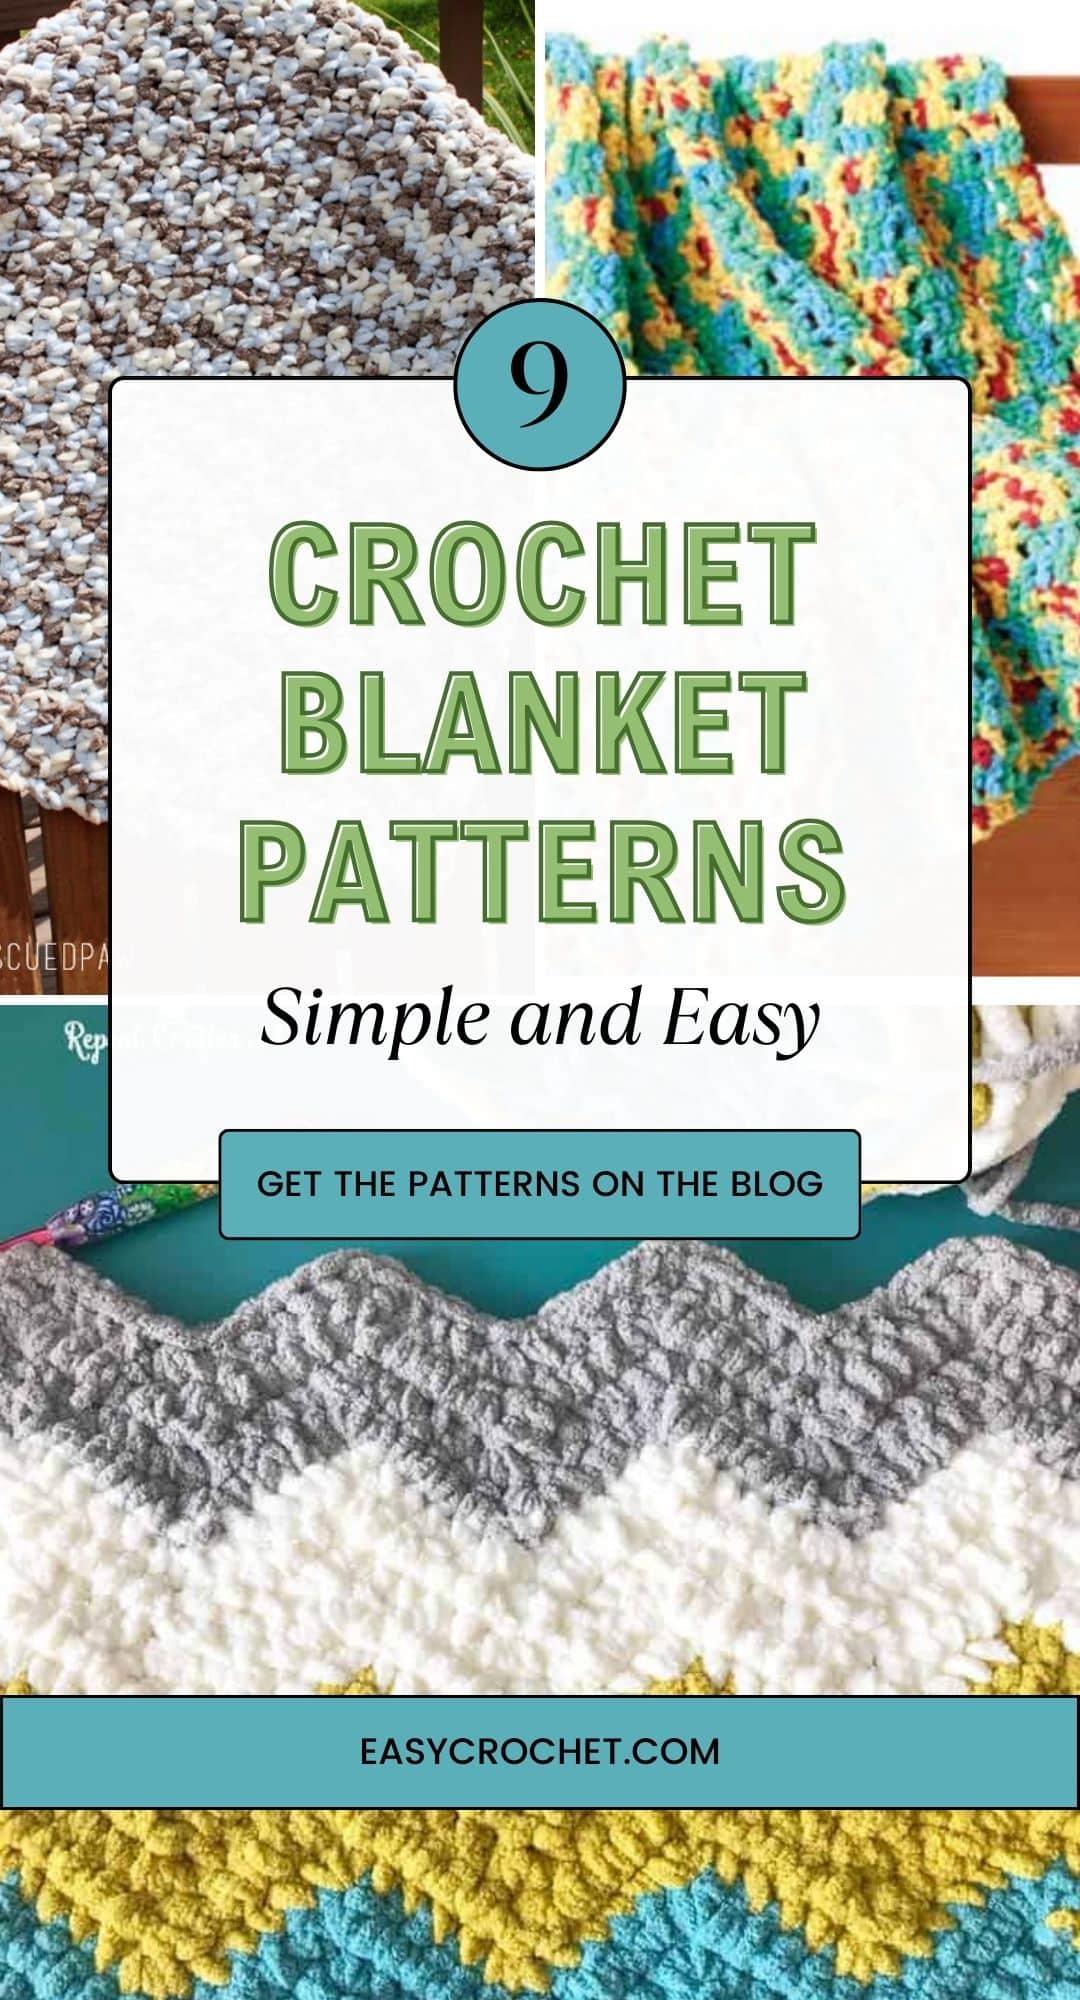 Bernat Blanket Free Crochet Baby Blanket Pattern - Crochet Bernat Blanket  Yarn Pattern